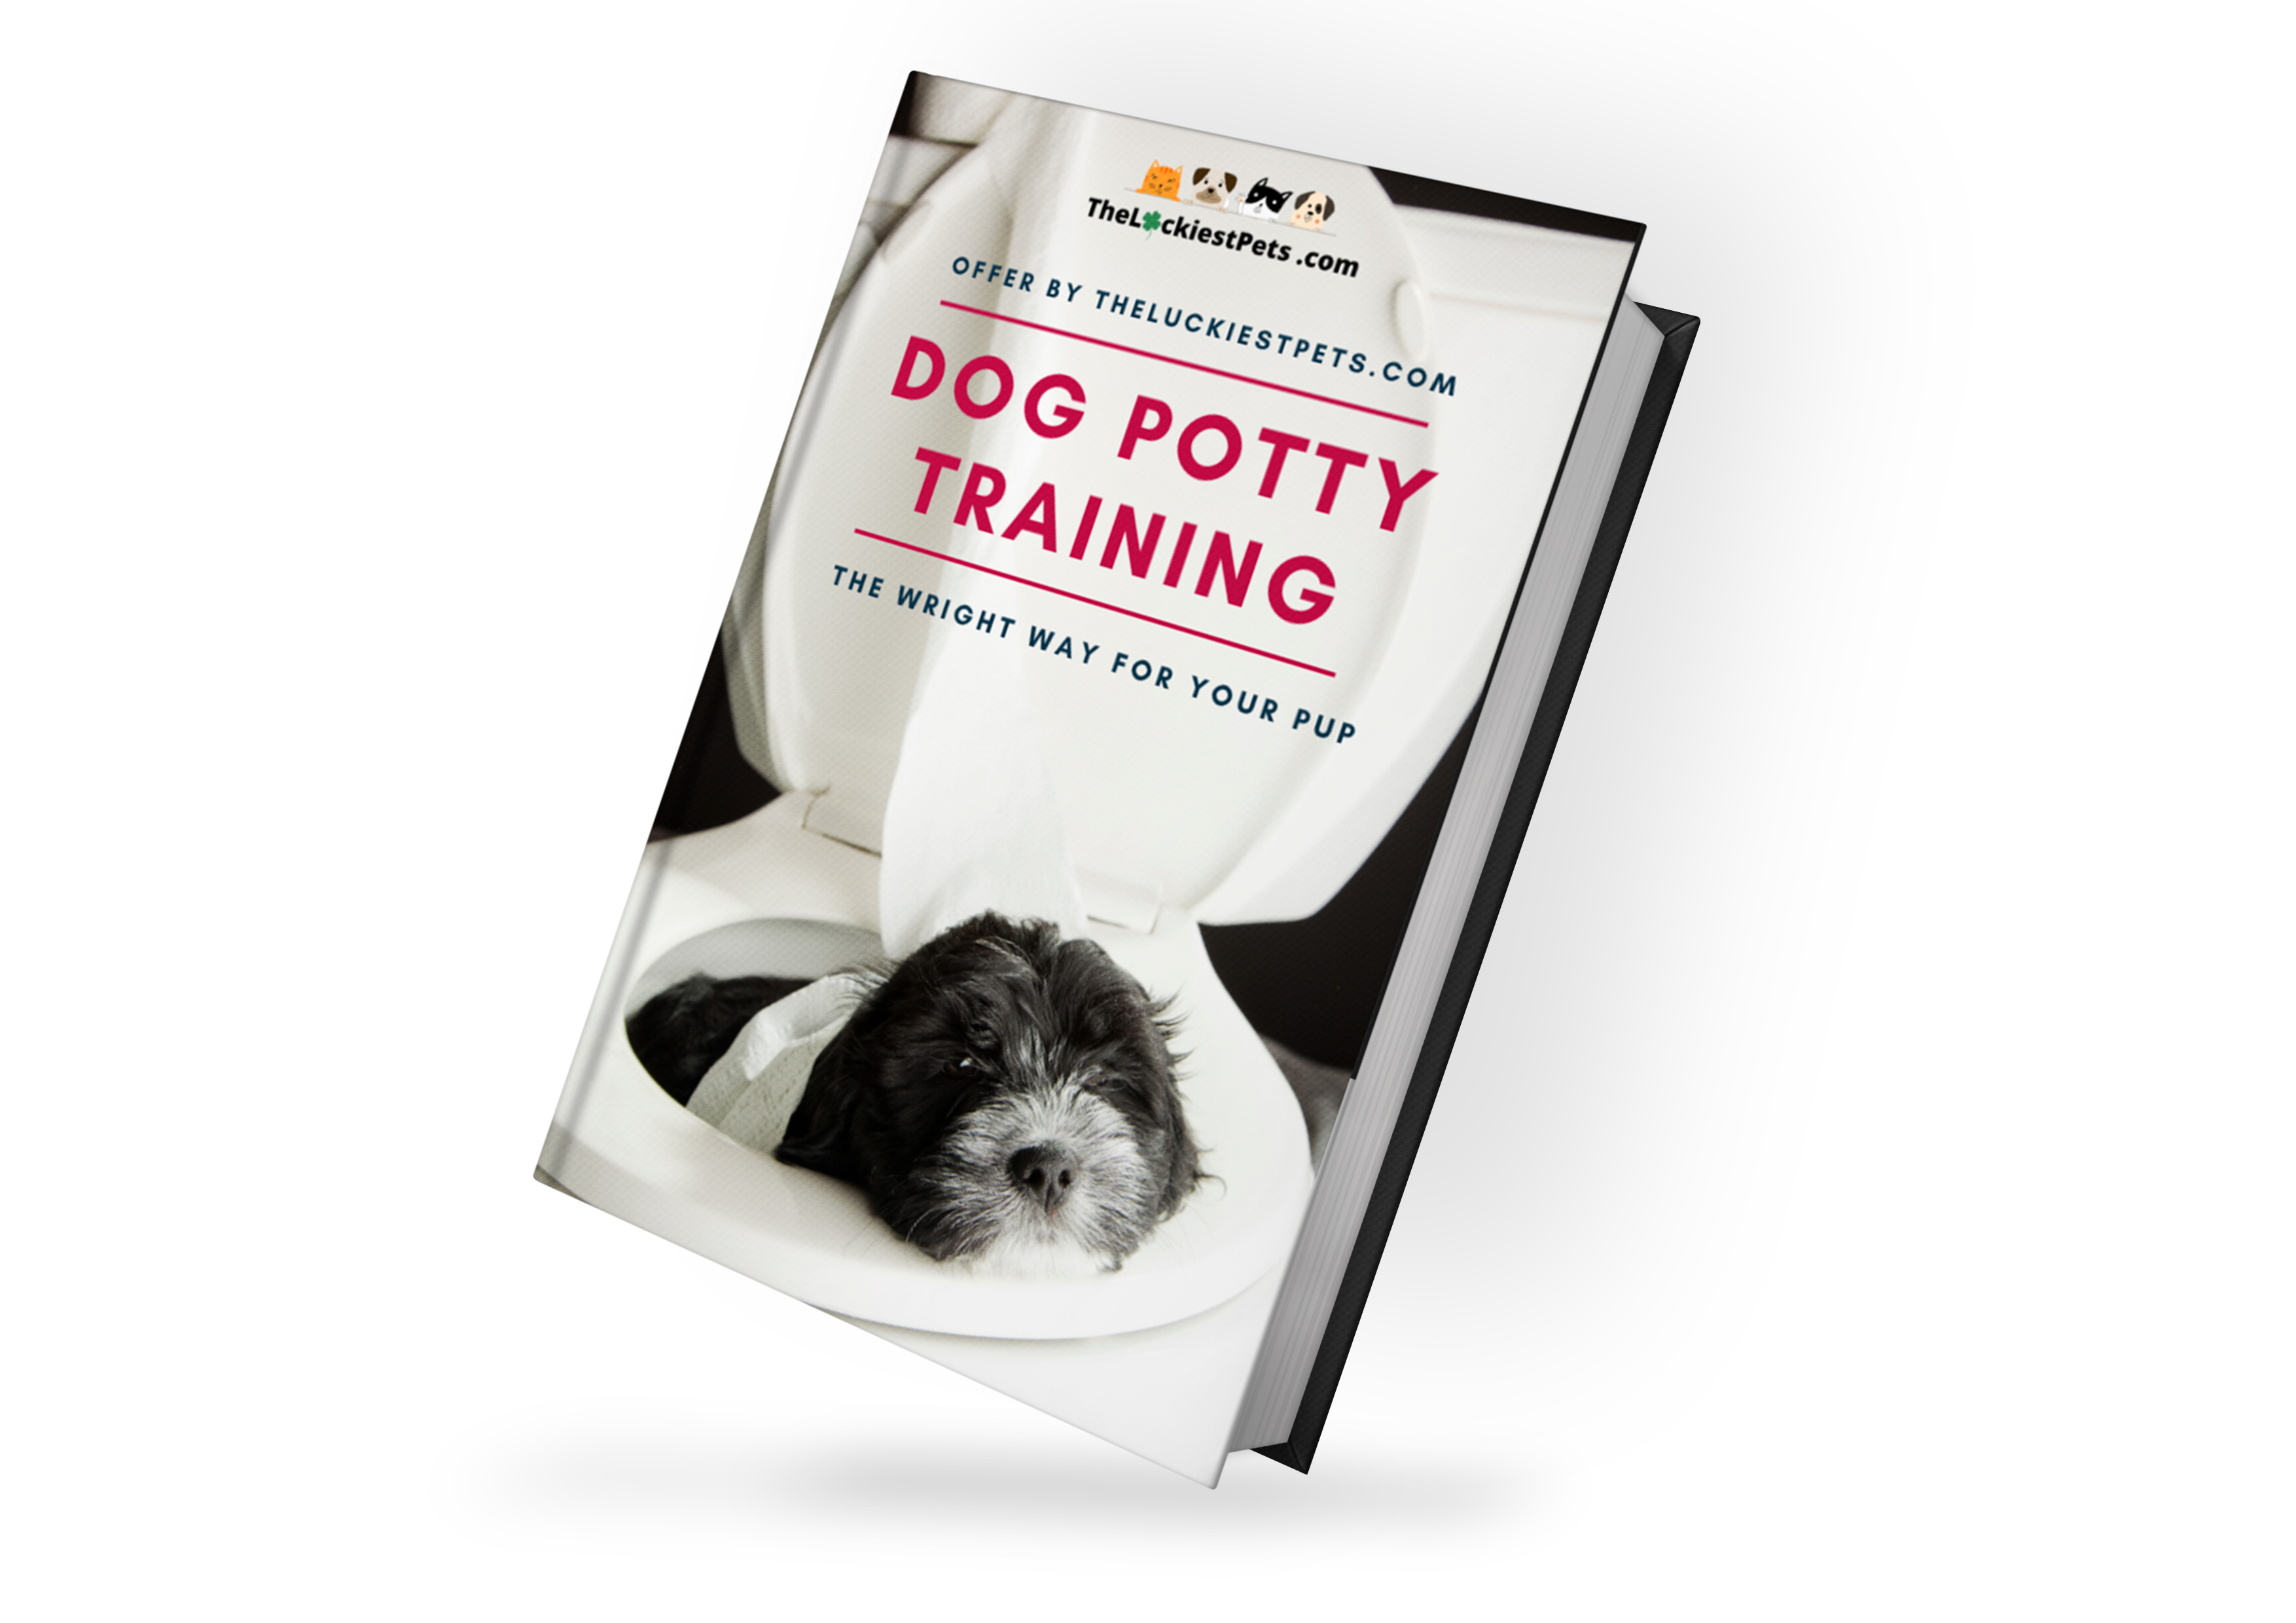 MyDog potty training